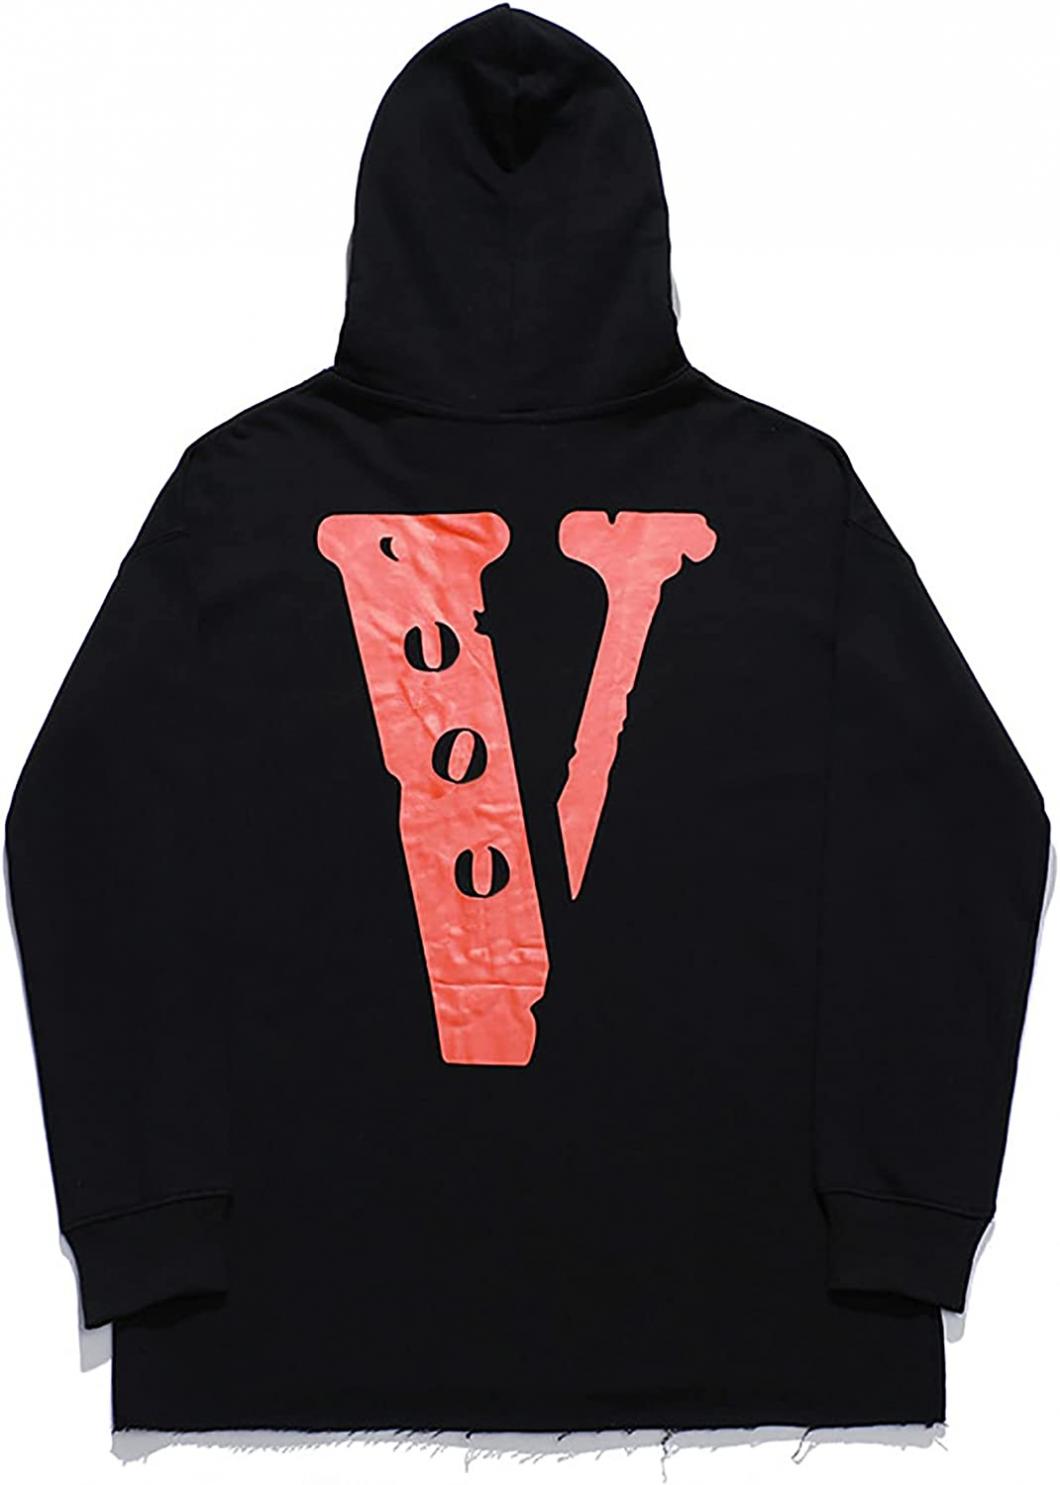 Big V Letter Hoodie Pullover Hip Hop Trend Hooded Sweatshirt for Men Women